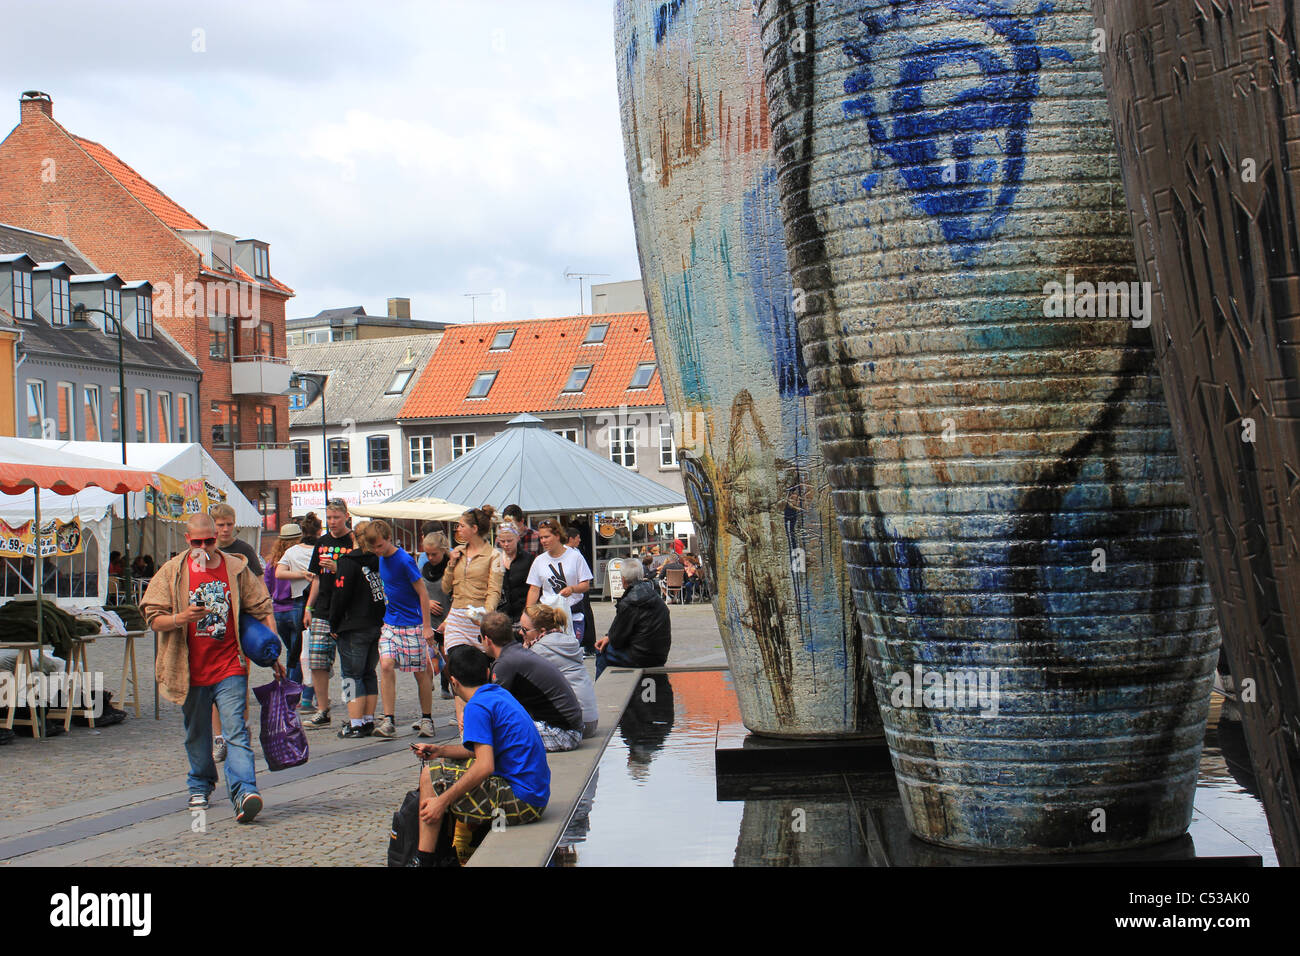 Petite ville de Roskilde, Danemark, pendant le célèbre festival de Roskilde. Le festival est l'un des plus grands festivals de musique en Europe. Banque D'Images